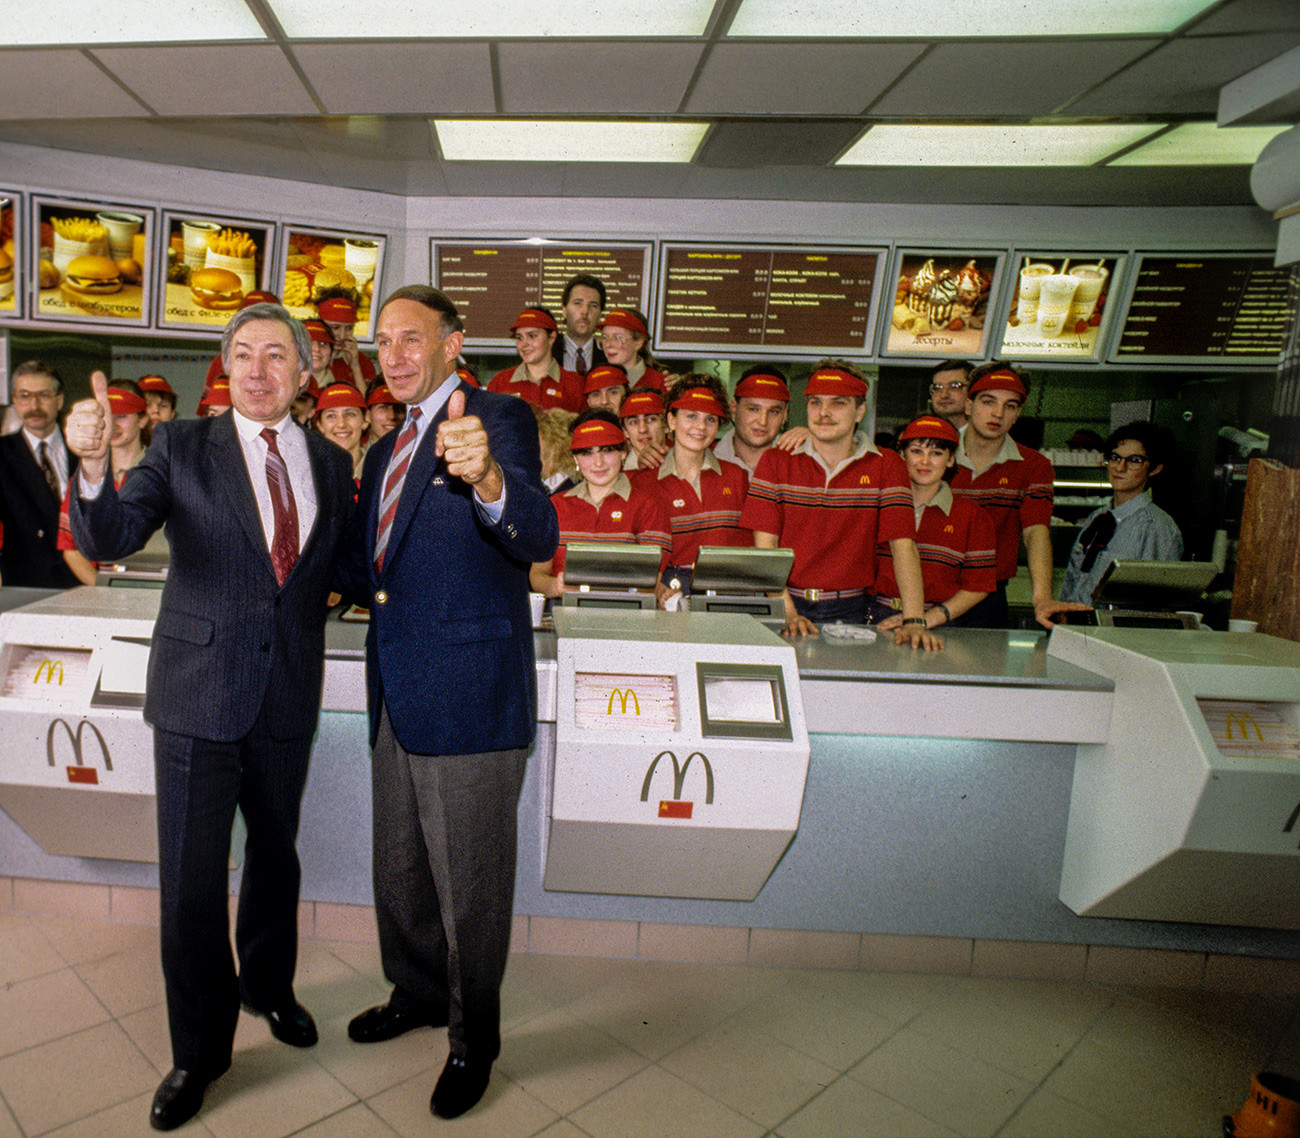 Vladimir Mališkov (lijevo), rukovoditelj zajedničkog sovjetsko-kanadskog restorana McDonald's, predsjednik upravnog odbora, i George A. Cohon, zamjenik šefa restorana McDonald's.

